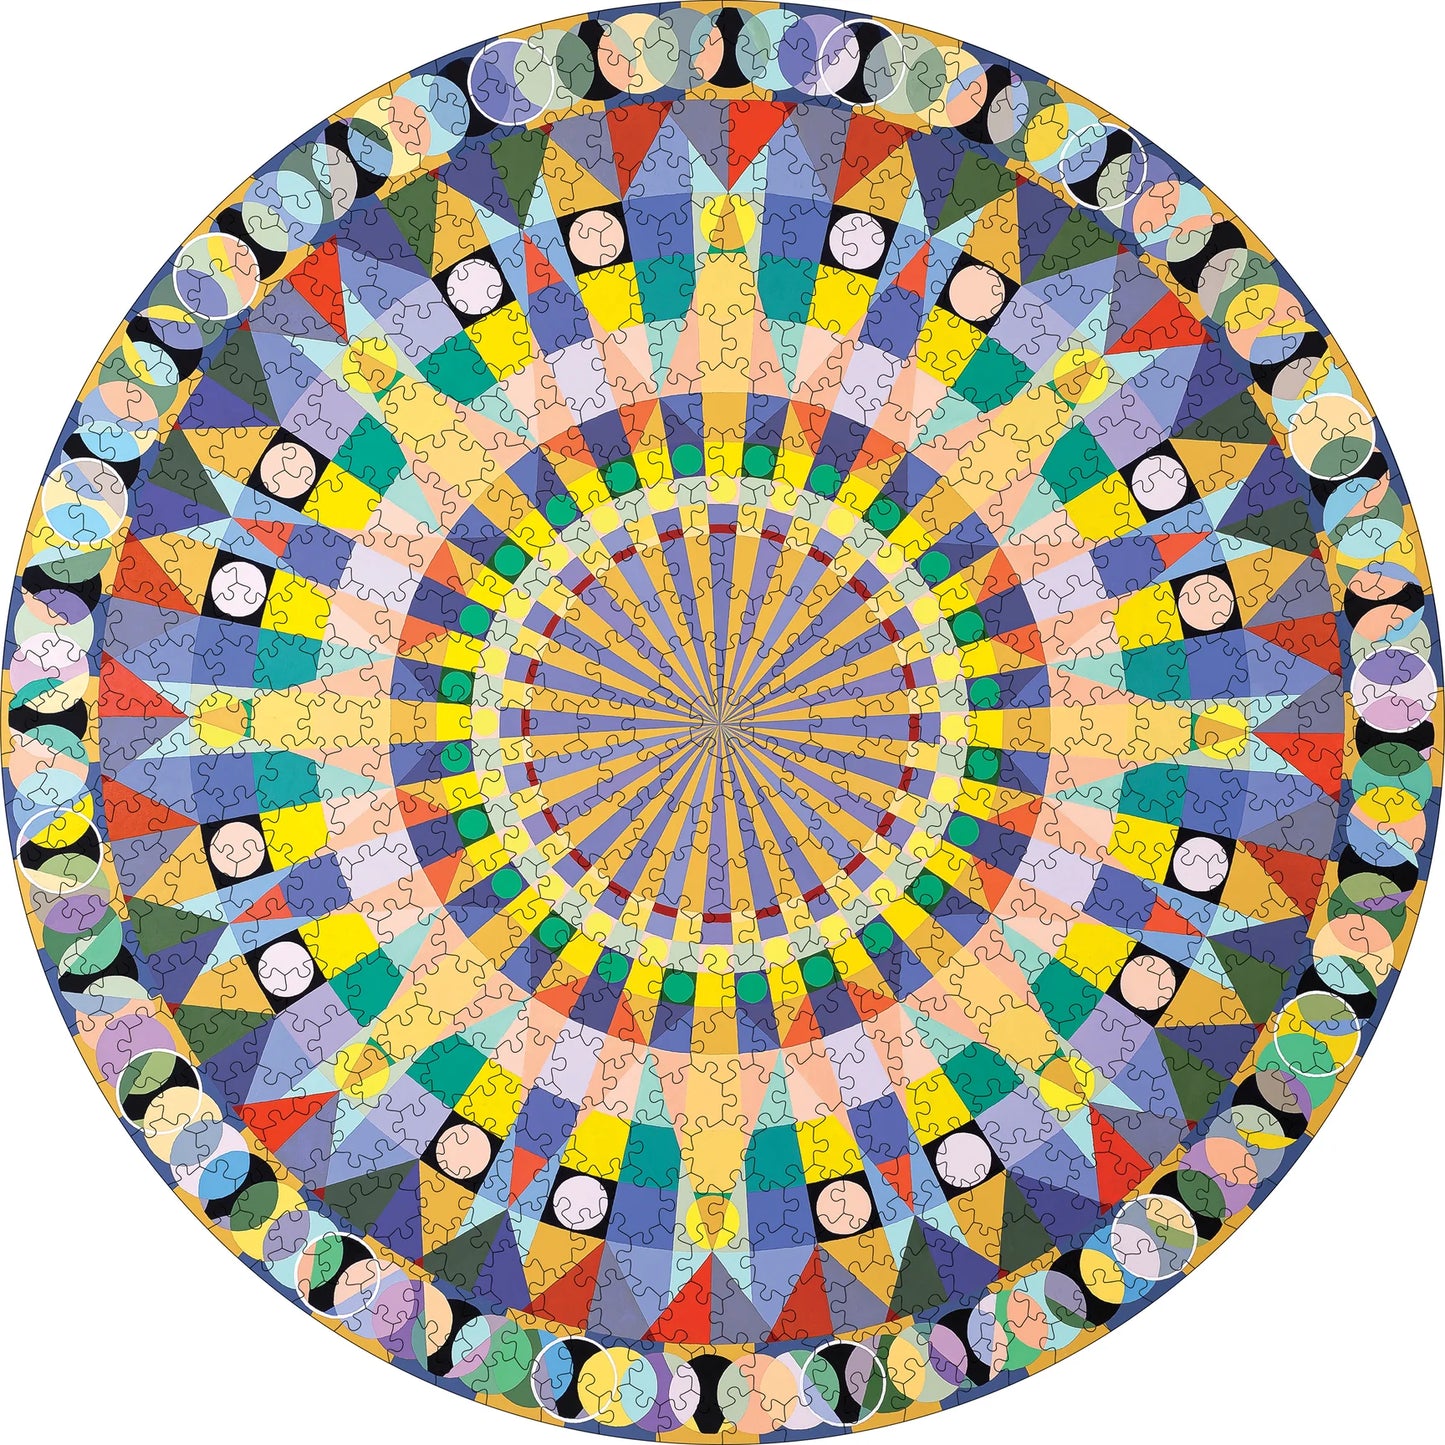 Susan Barnett: Mandala IV | 500 Piece Circular Jigsaw Puzzle